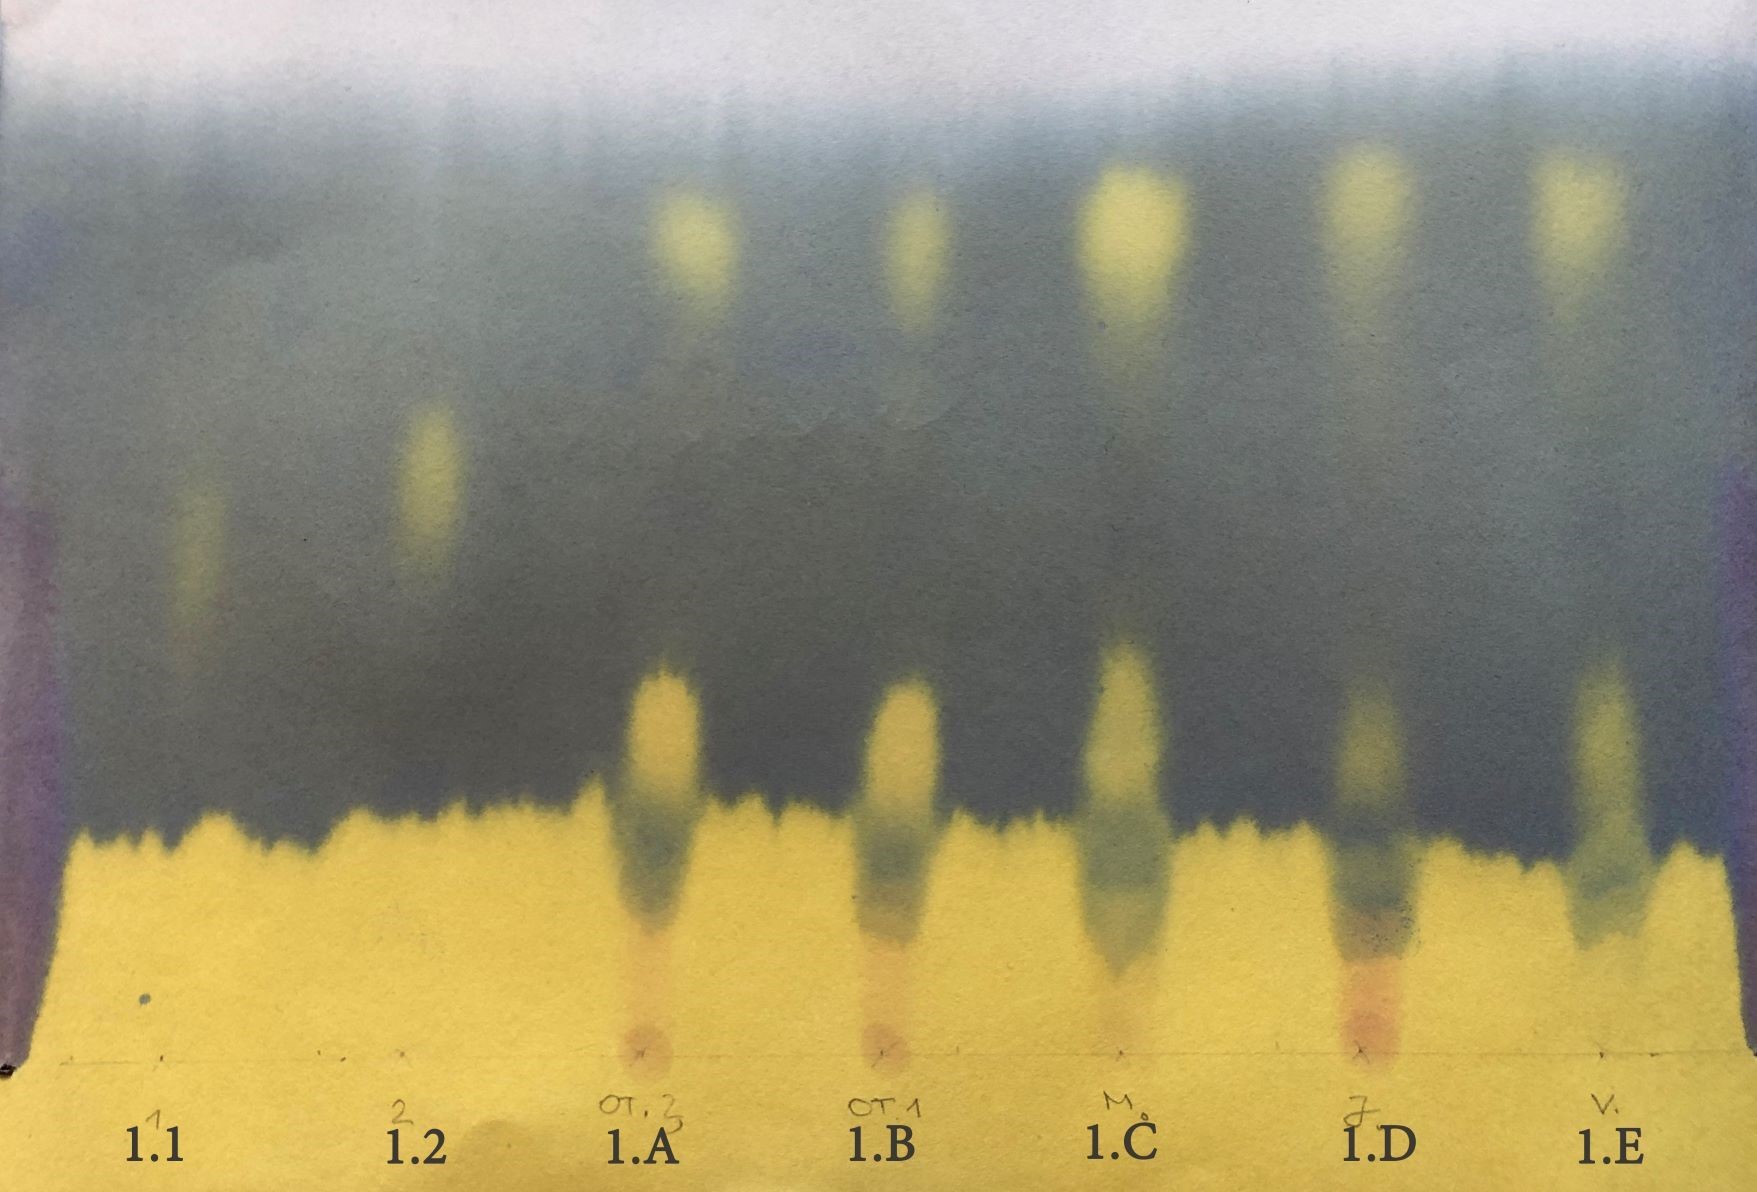 Malolaktinis virsmas - popieriaus chromatografija